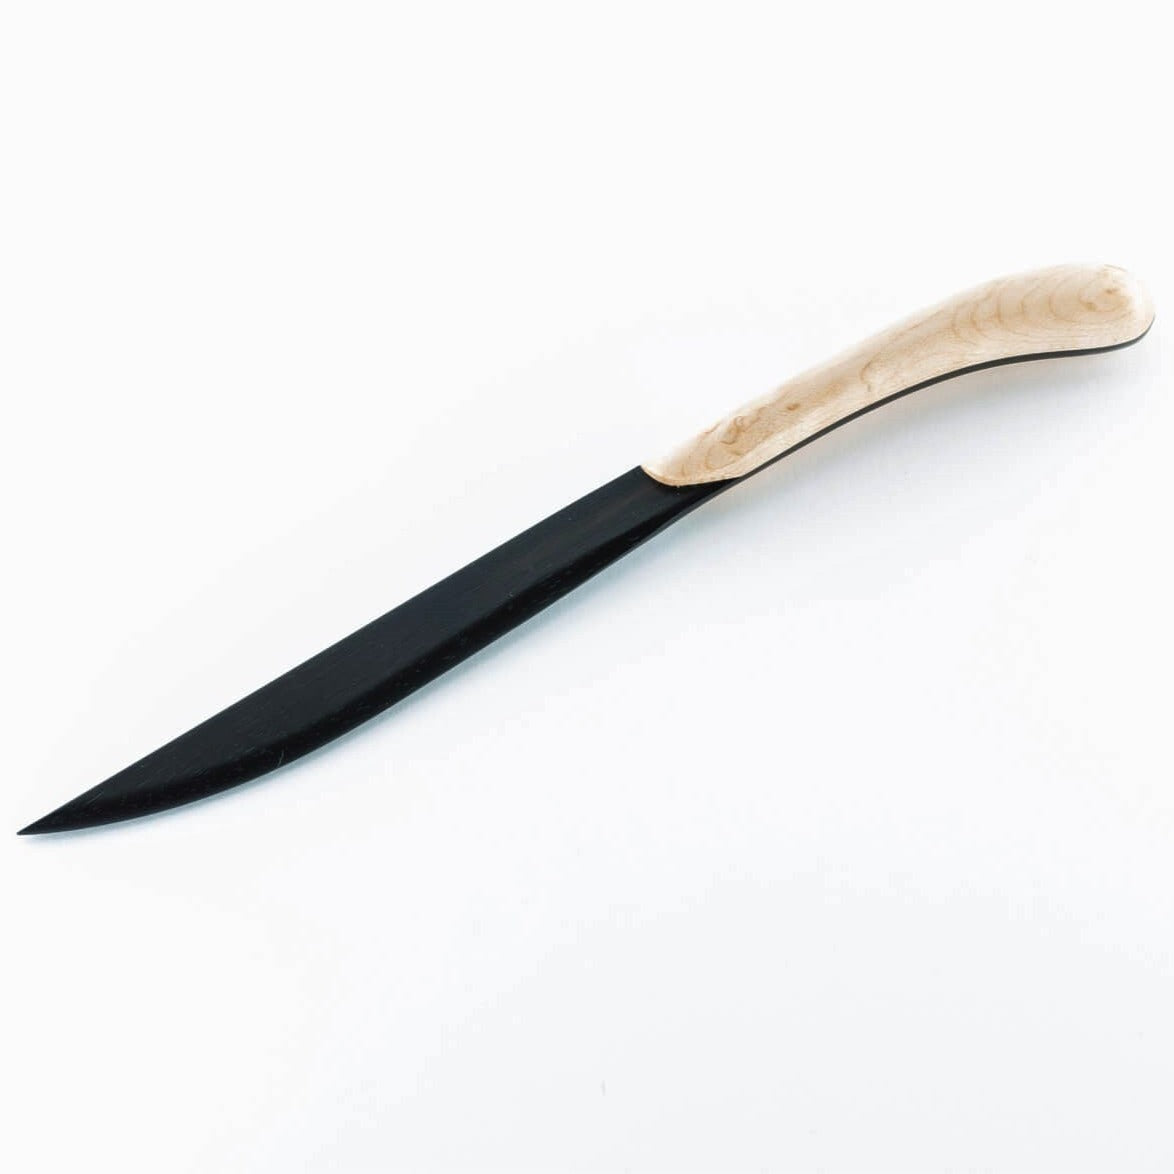 Handmade Wooden Letter Opener - Ebony Blade by Davin & Kesler